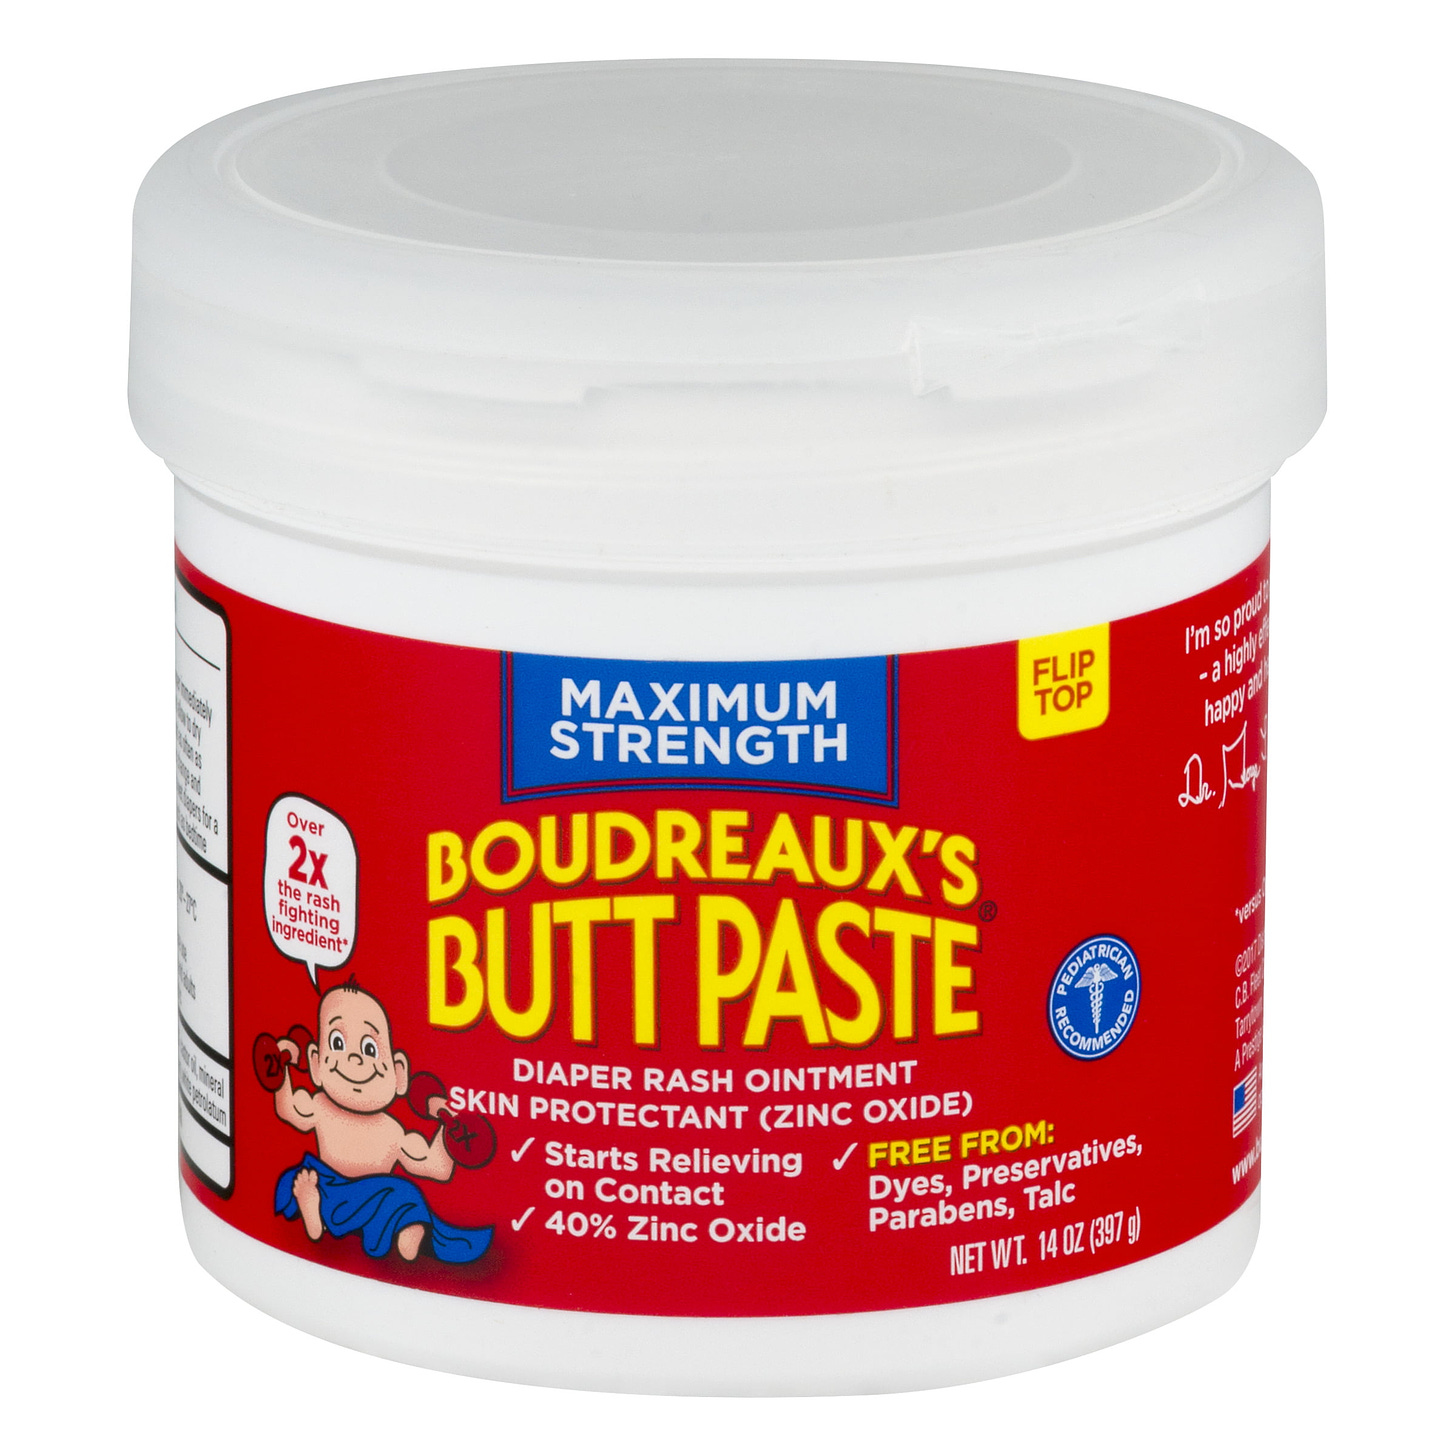 Boudreaux's Butt Paste Diaper Rash Ointment, Maximum Strength, 14 Ounce - Walmart.com